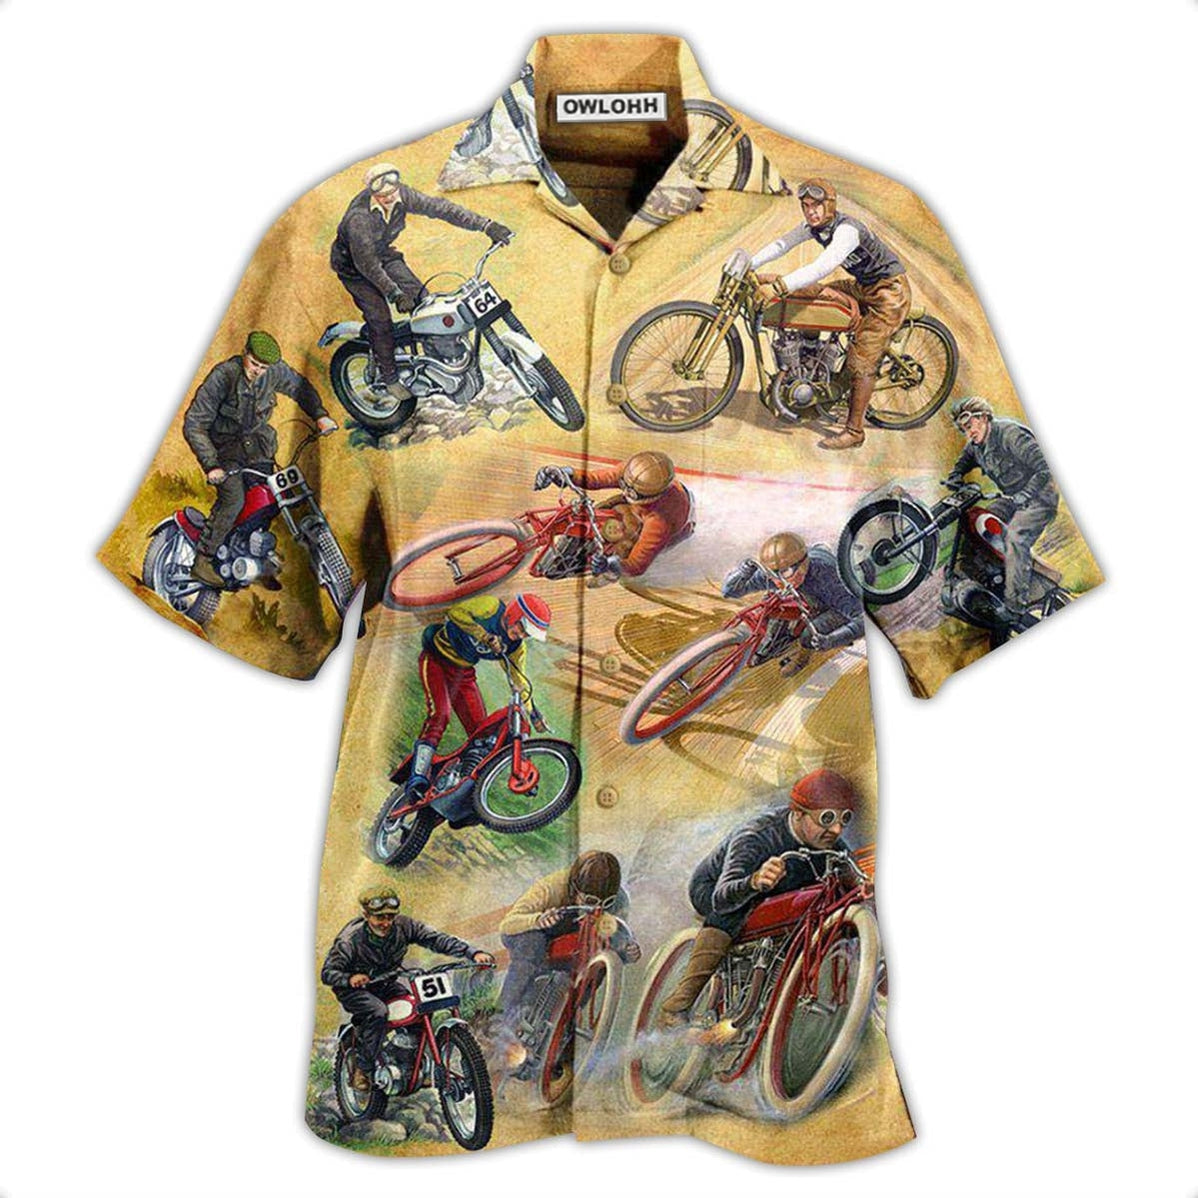 Hawaiian Shirt / Adults / S Motorcycle Amazing Vintage Style - Hawaiian Shirt - Owls Matrix LTD